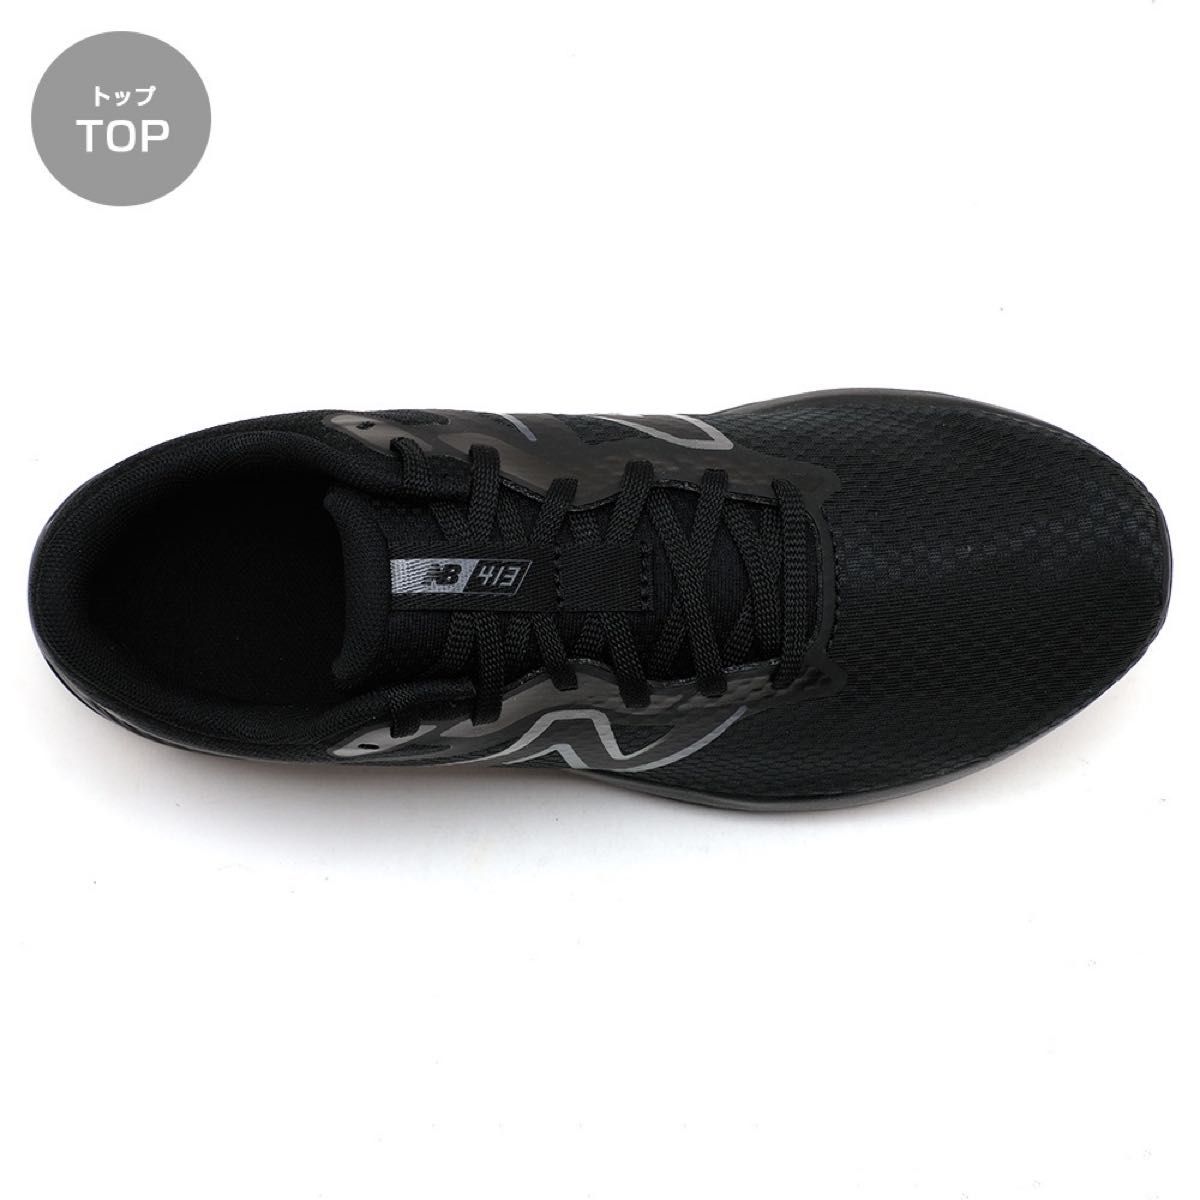 ニューバランス メンズ スニーカー ブラック 黒 28cm ランニング ジョギング ウォーキング トレーニング 散歩 通勤 靴